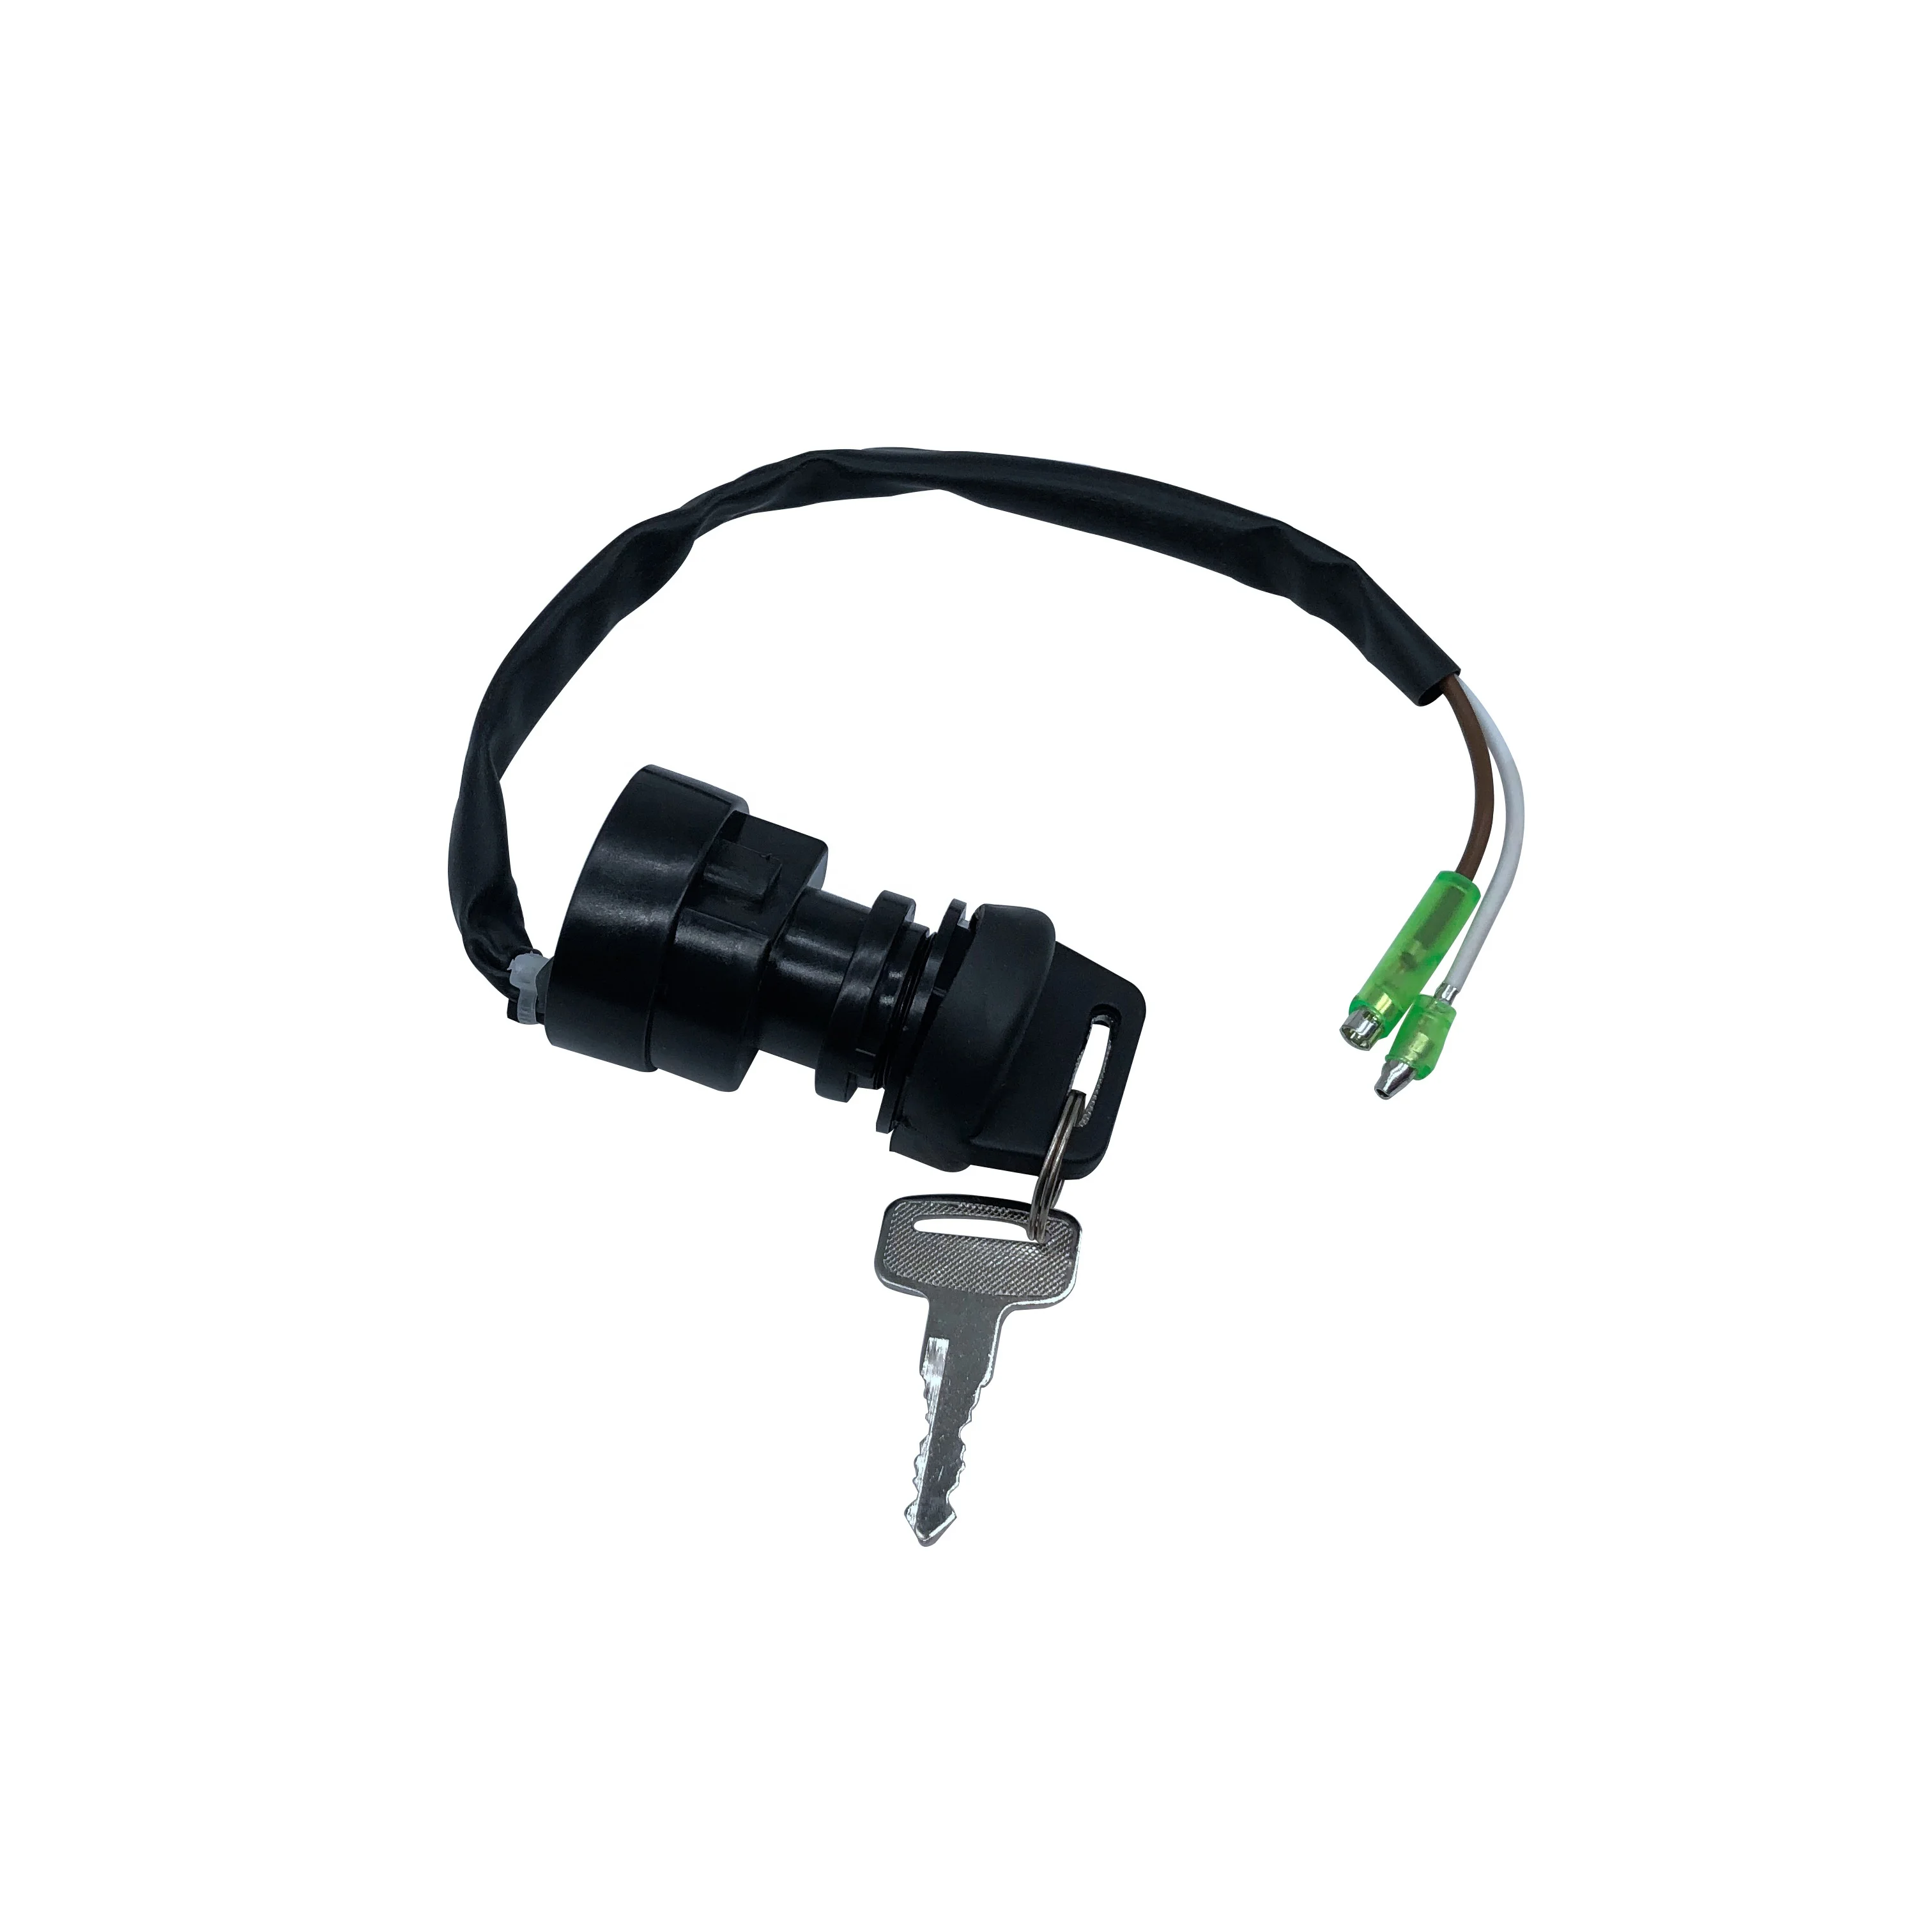 Atv/utv parts & accessories 2 Wires Ignition Key Switch  for Kawasaki Bayou KLF400 KLF300 KLF250 KLF220 4X4 B6 B5 A1 1988-2003